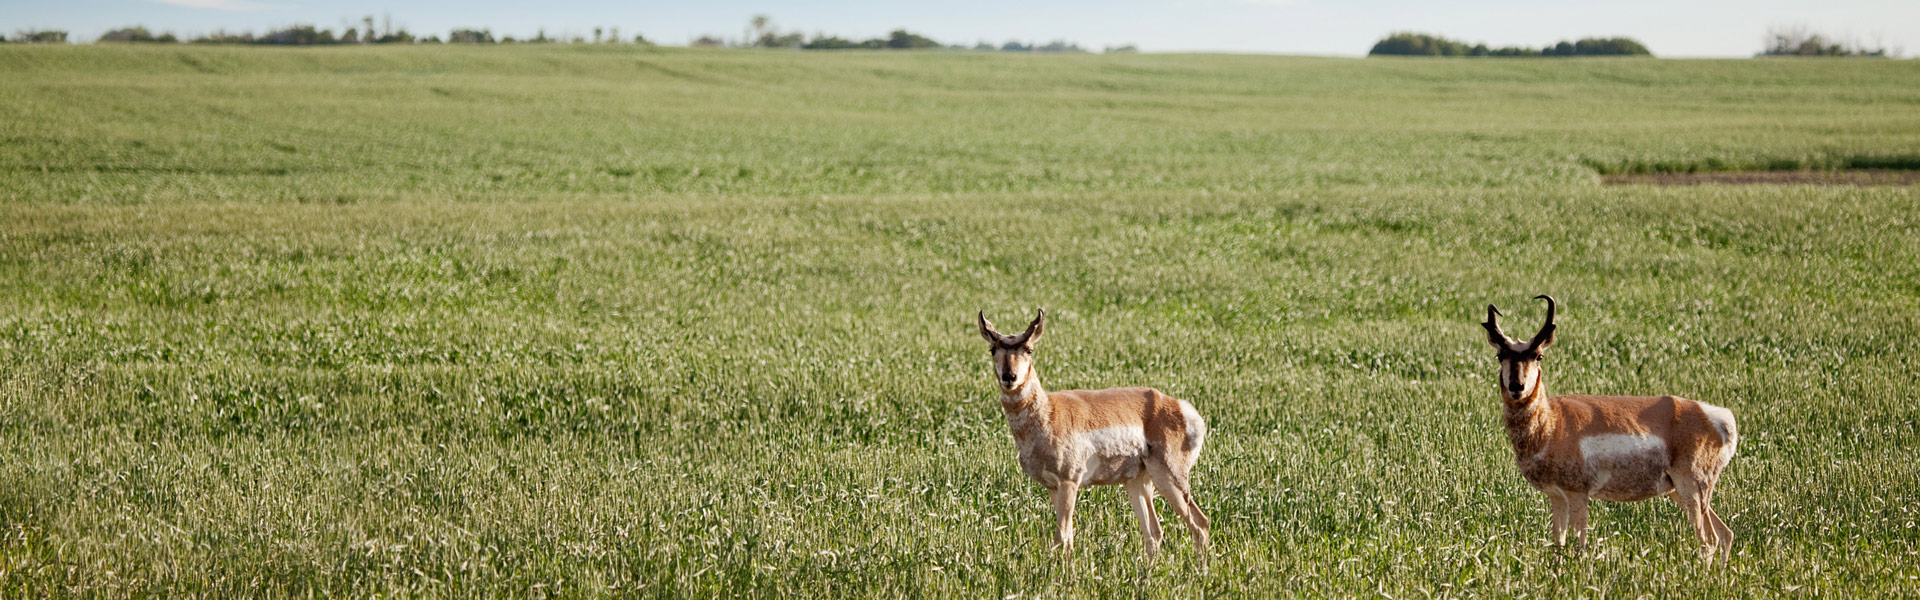 Antelope in a field.